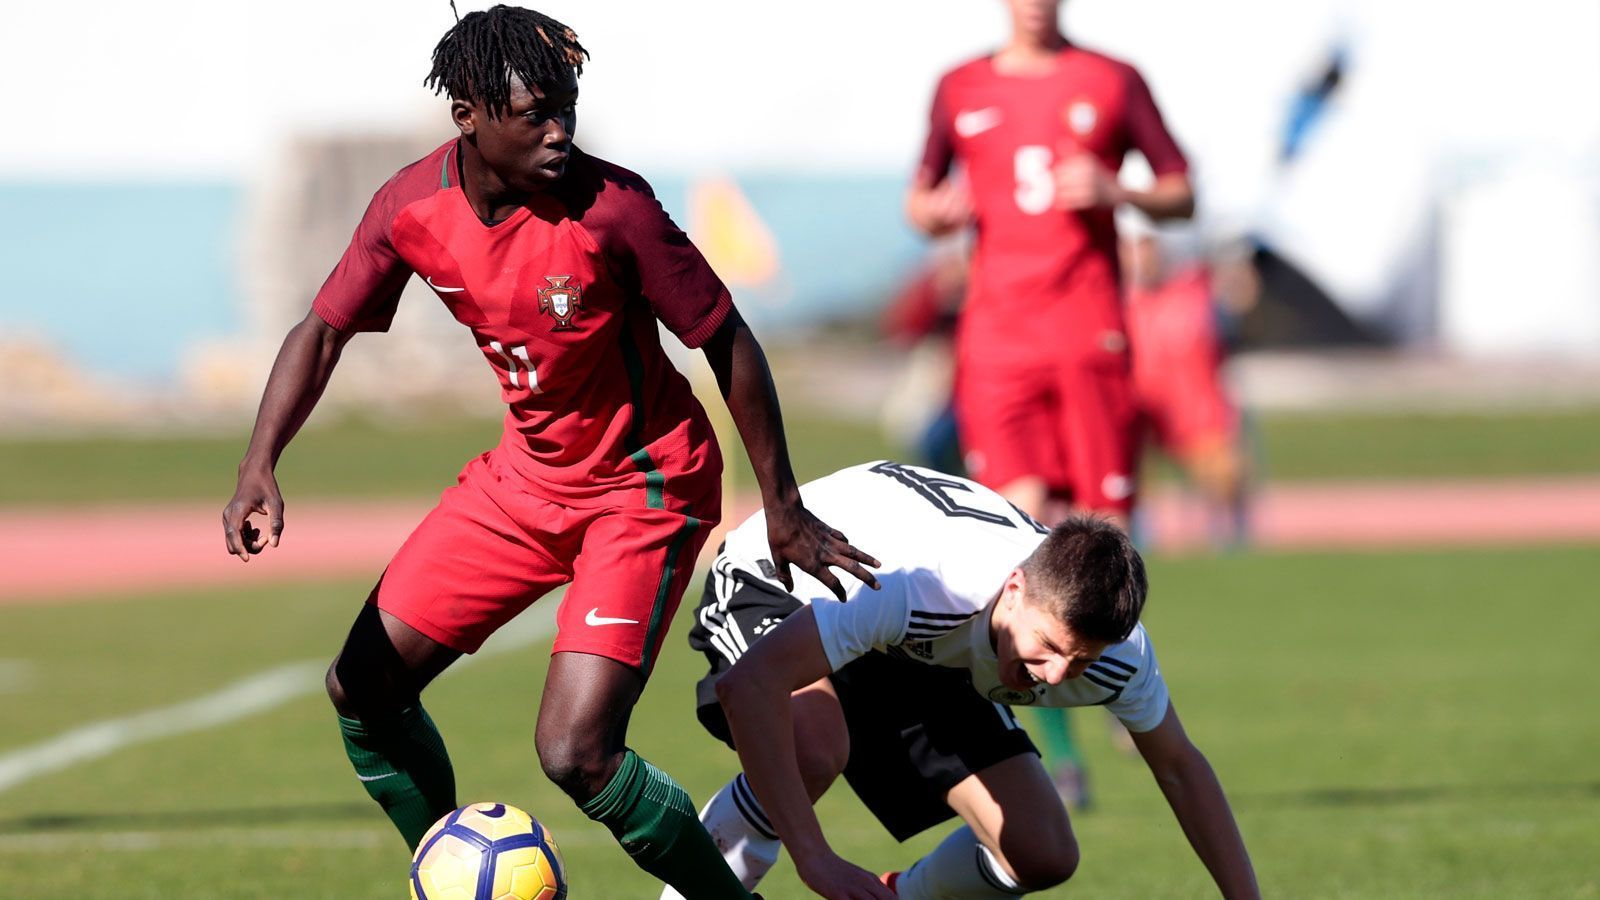 
                <strong>Platz 6: Joelson Fernandes (17 Jahre)</strong><br>
                Aktueller Verein: Sporting Lissabon - Nation: Portugal - Position: Linksaußen - Marktwert: 6 Millionen Euro
              